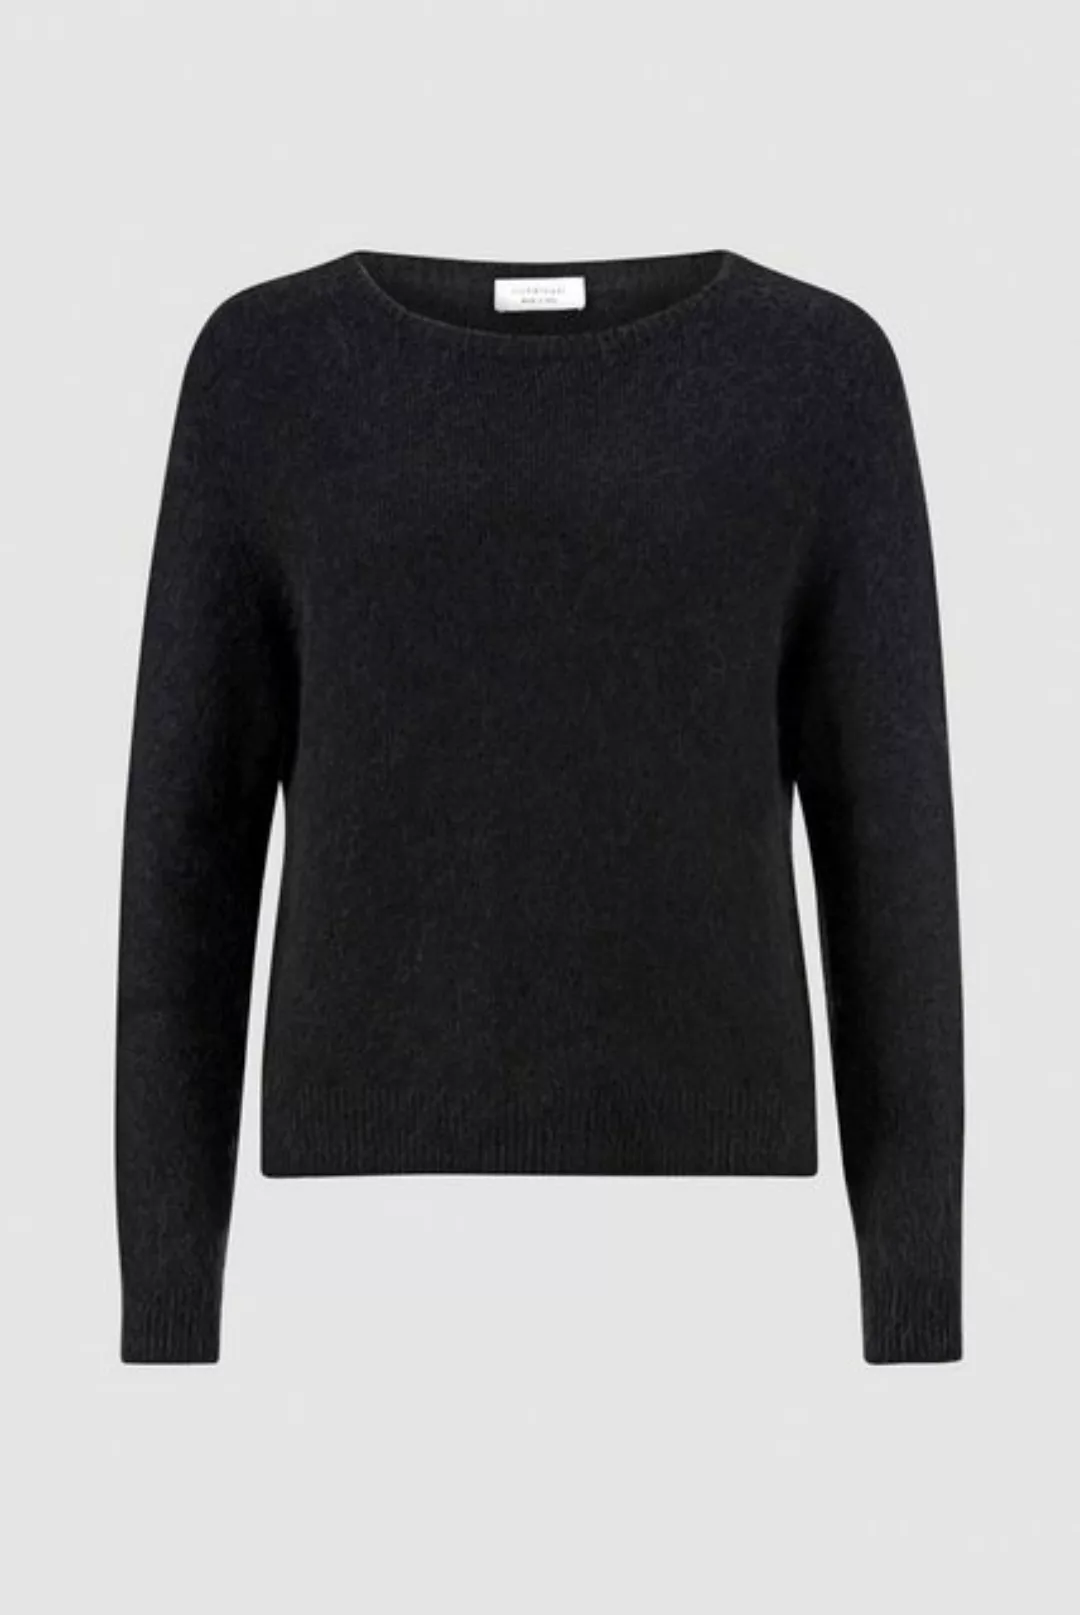 Rich & Royal Sweatshirt günstig online kaufen